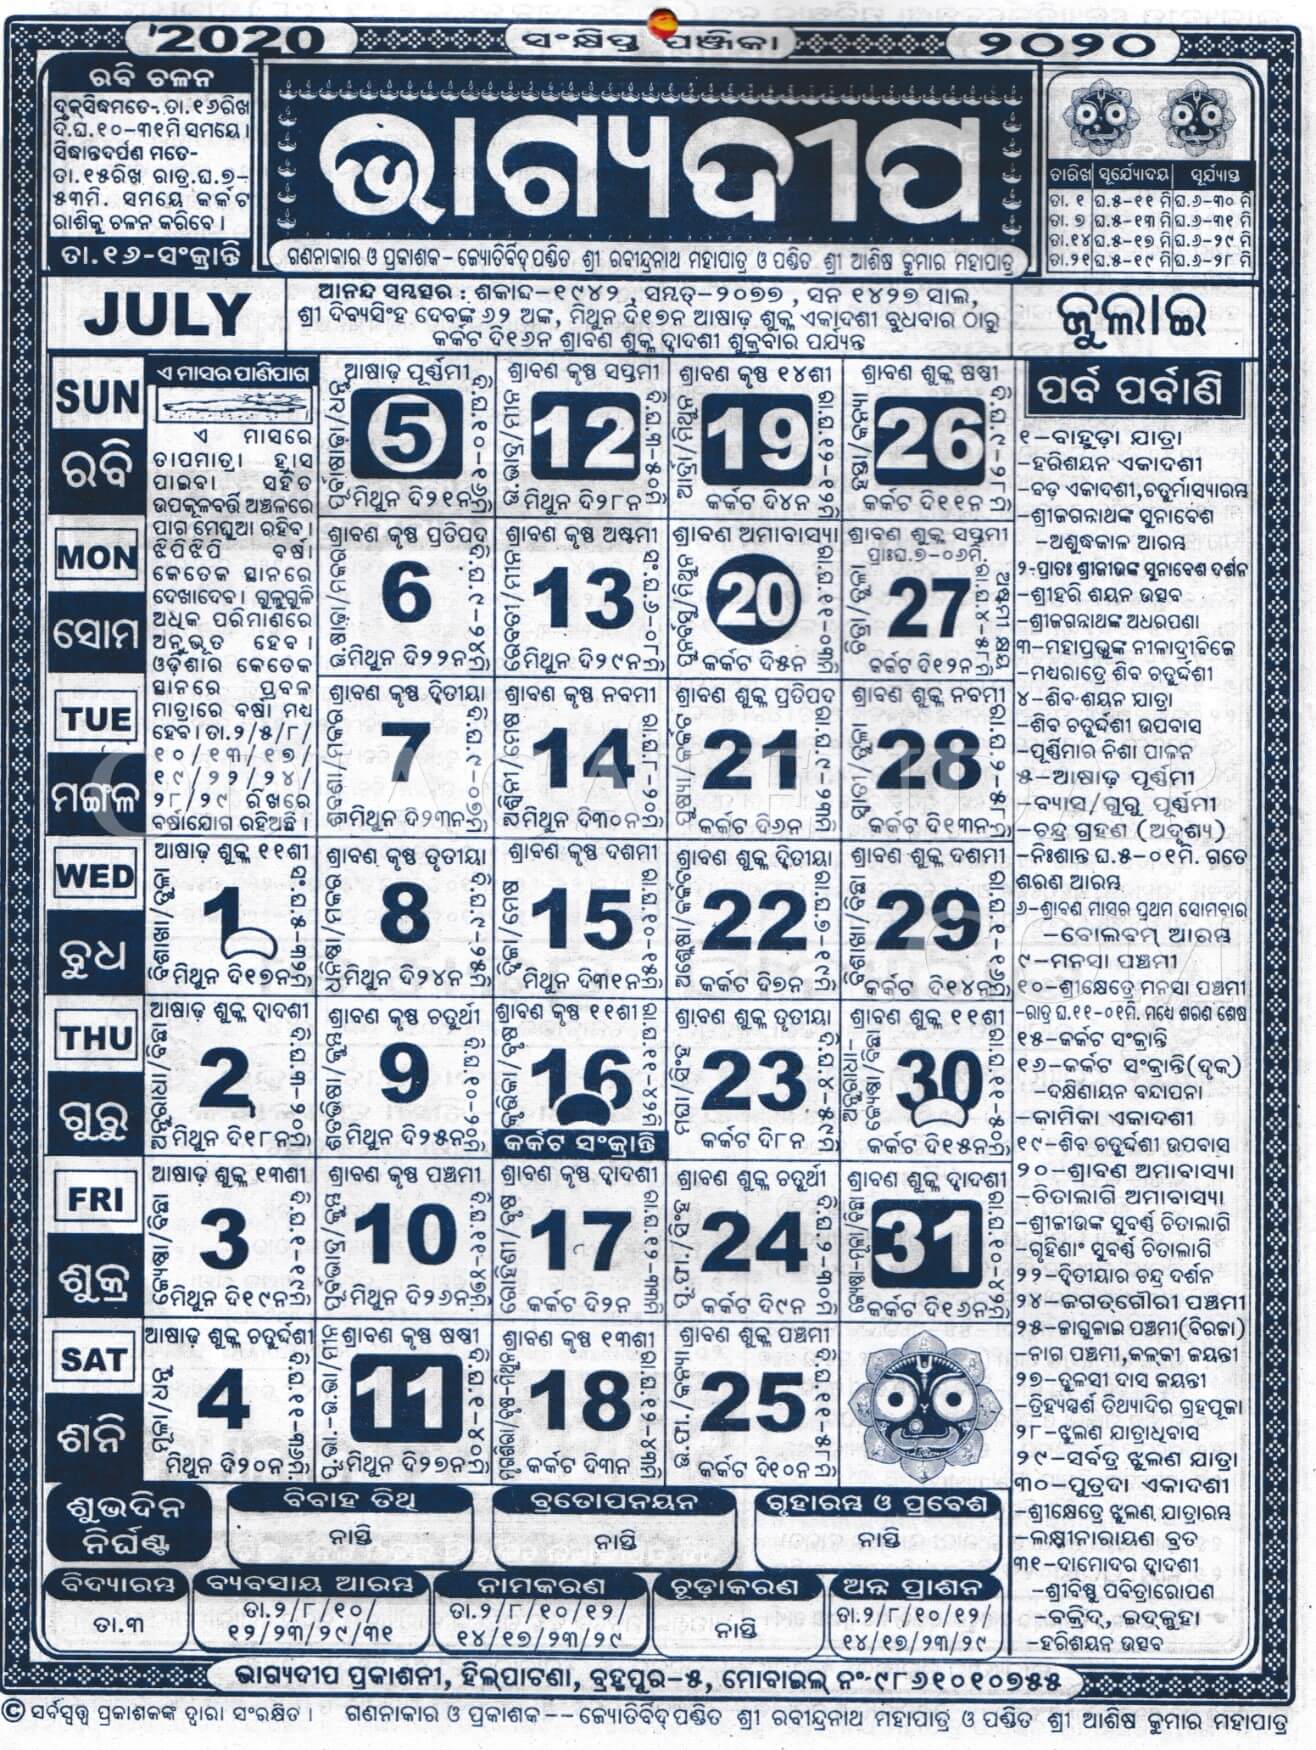 Bhagyadeep Calendar 2020 July